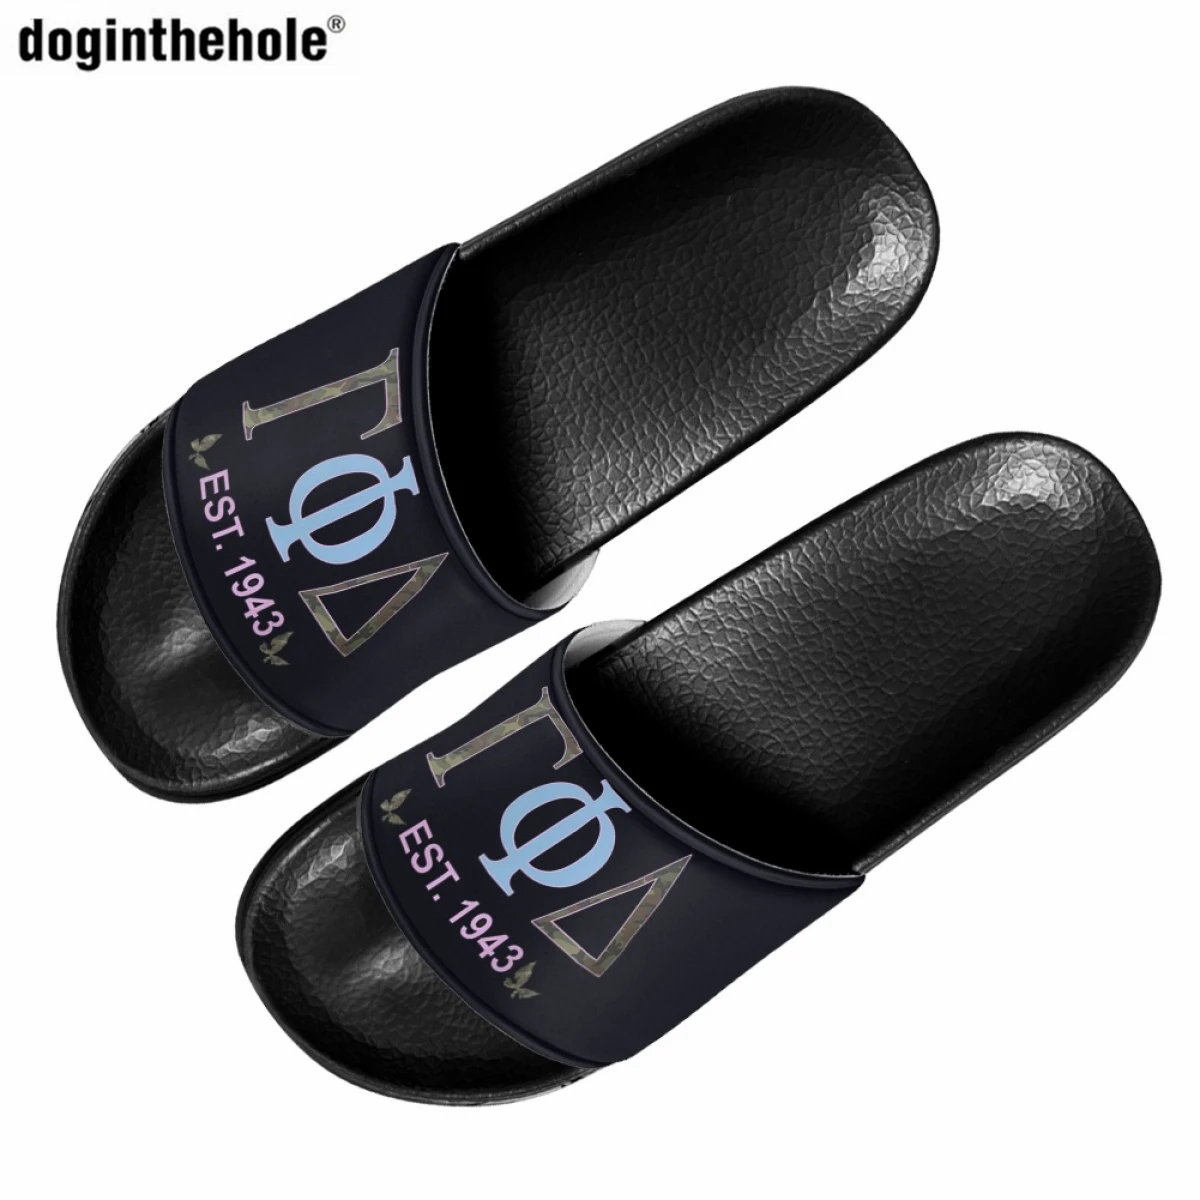 

Gamma Phi Delta Sorority Sisterhood Print Slippers for Women Outdoor Beach Non-slip Slippers Summer EVA Slip On Wading Sandals